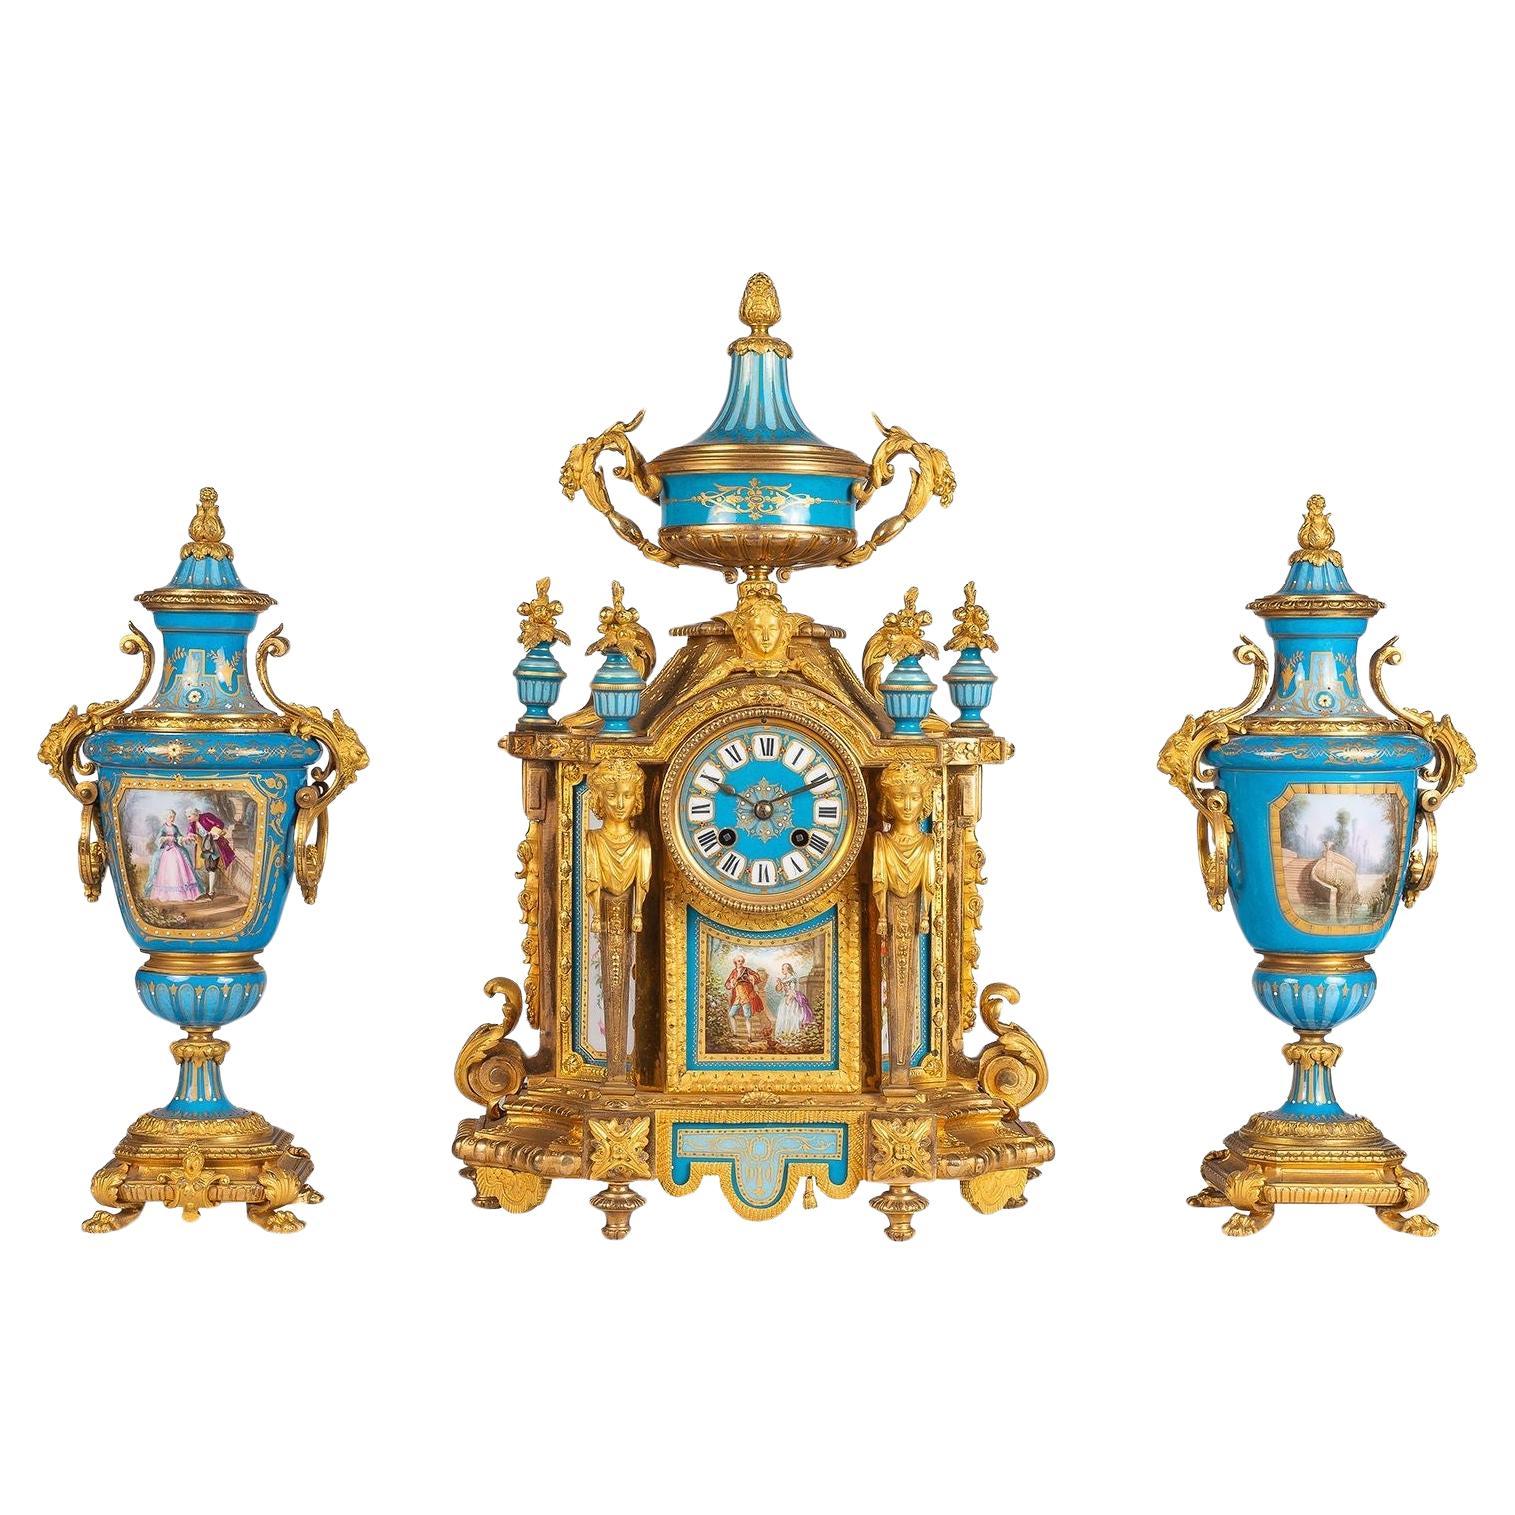 Grand service de pendules en porcelaine de style Sèvres, 19e siècle.